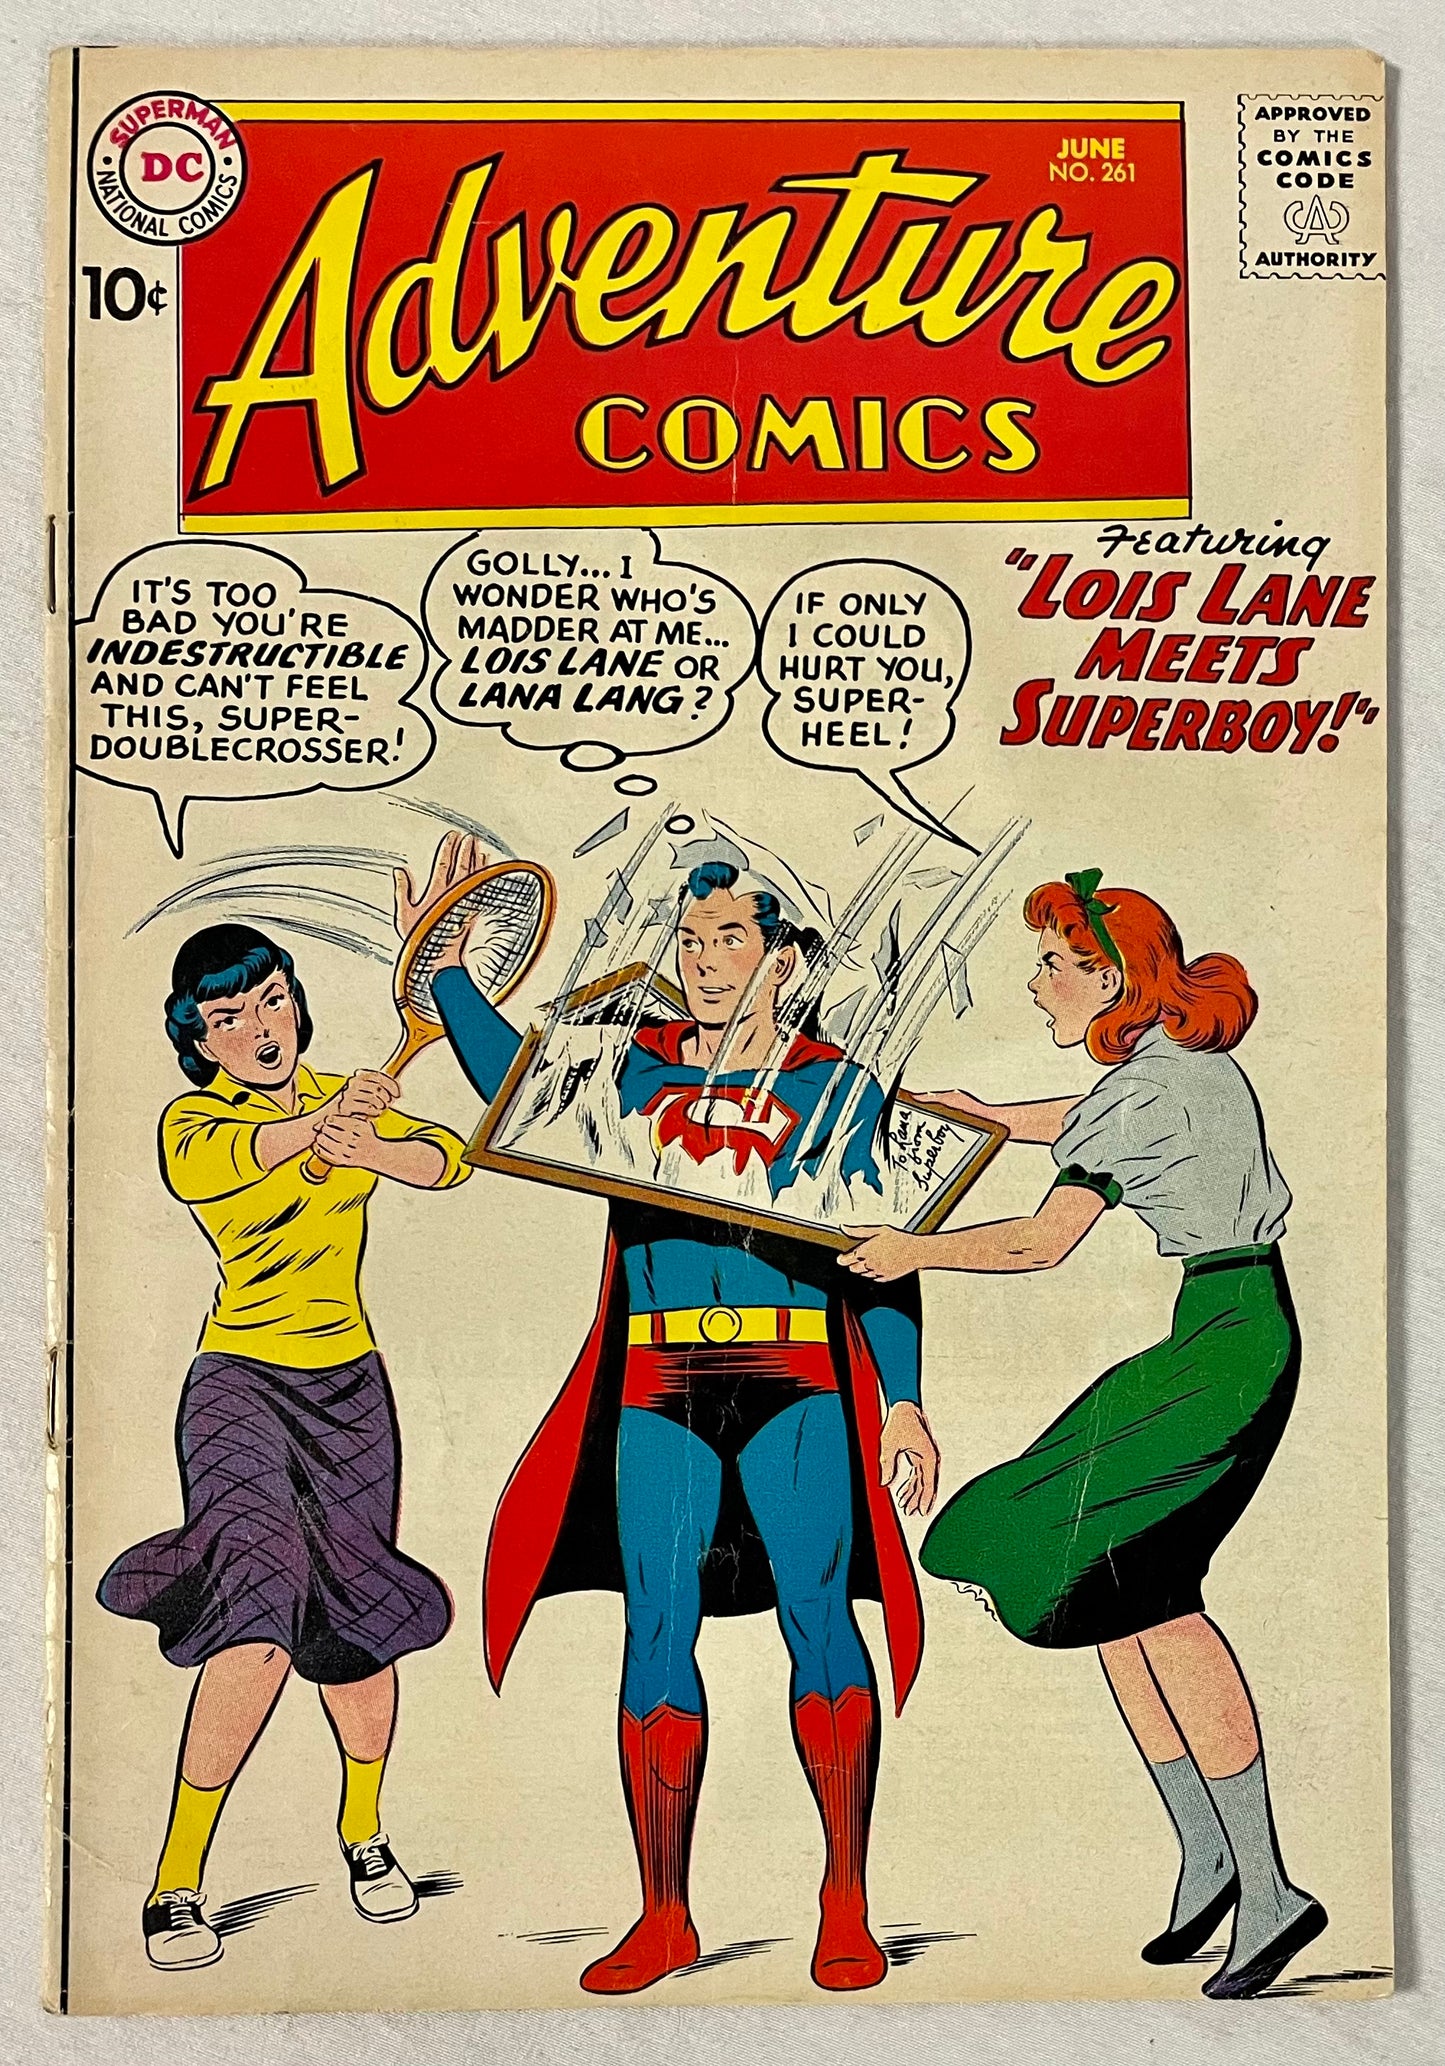 DC Comics Adventure Comics No. 261